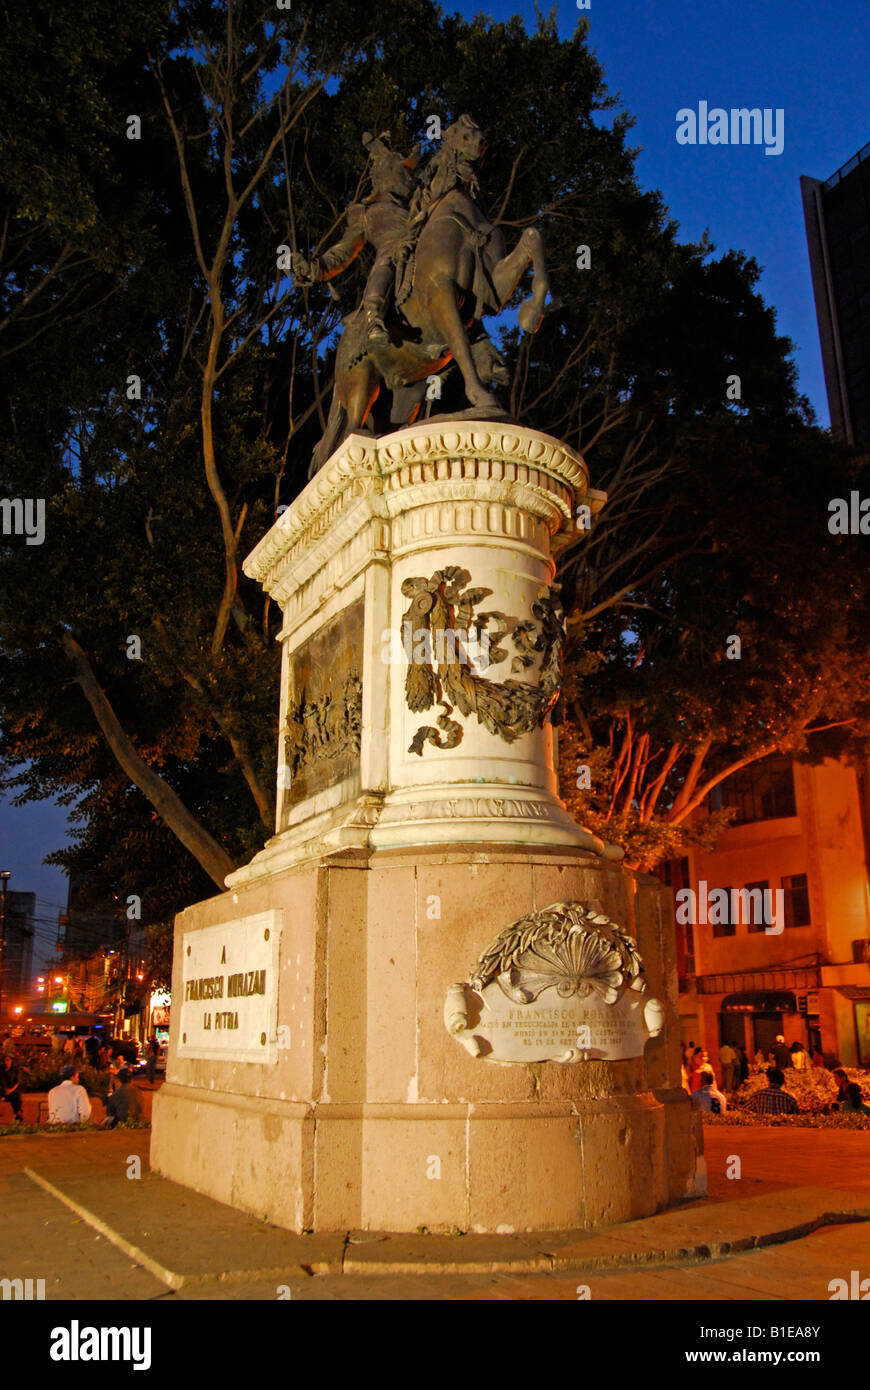 Statue of Francisco Morazan, Tegucigalpa, Honduras, Central America Stock Photo